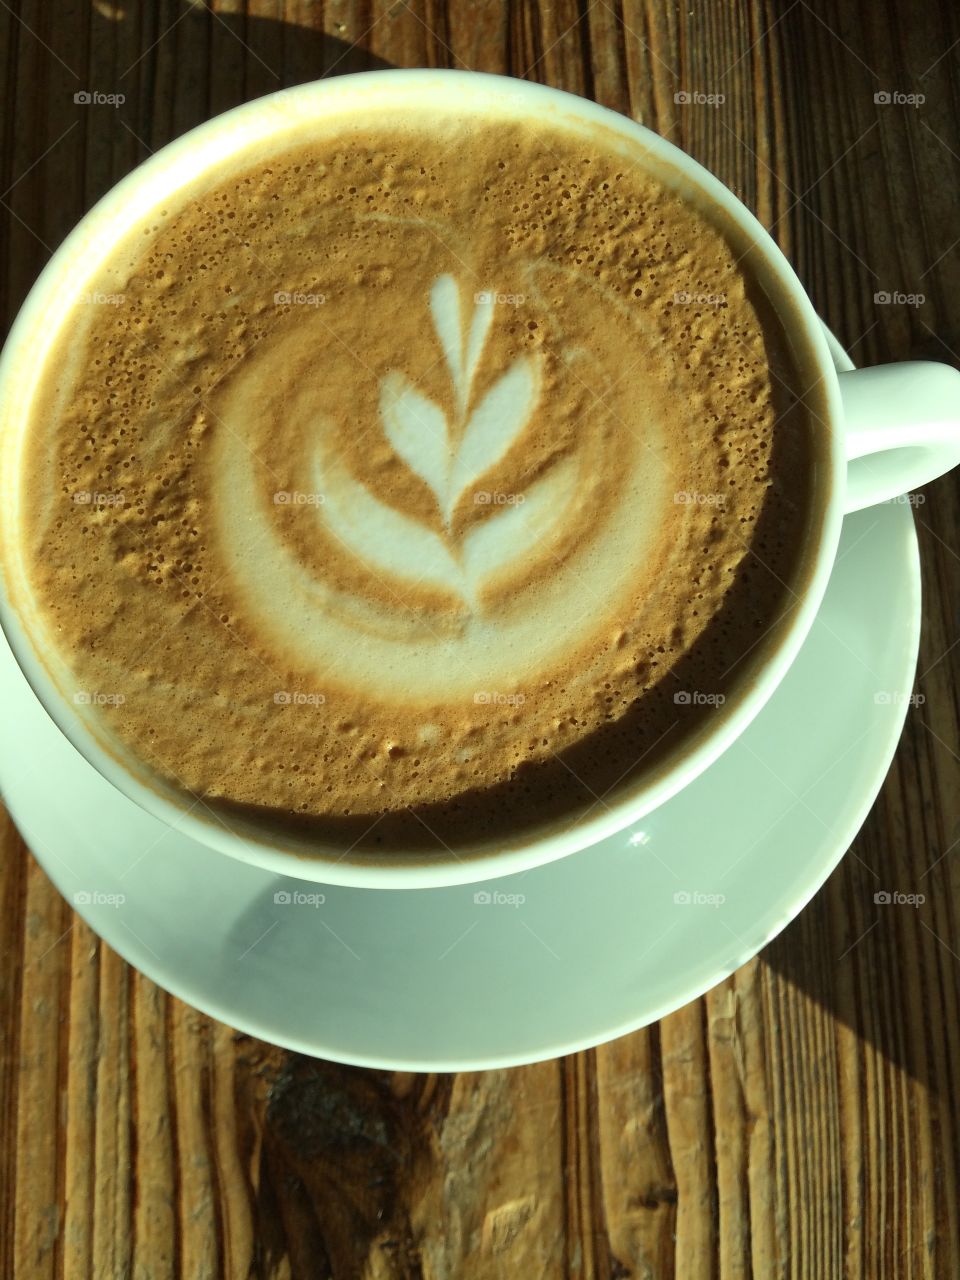 Tulip latte art